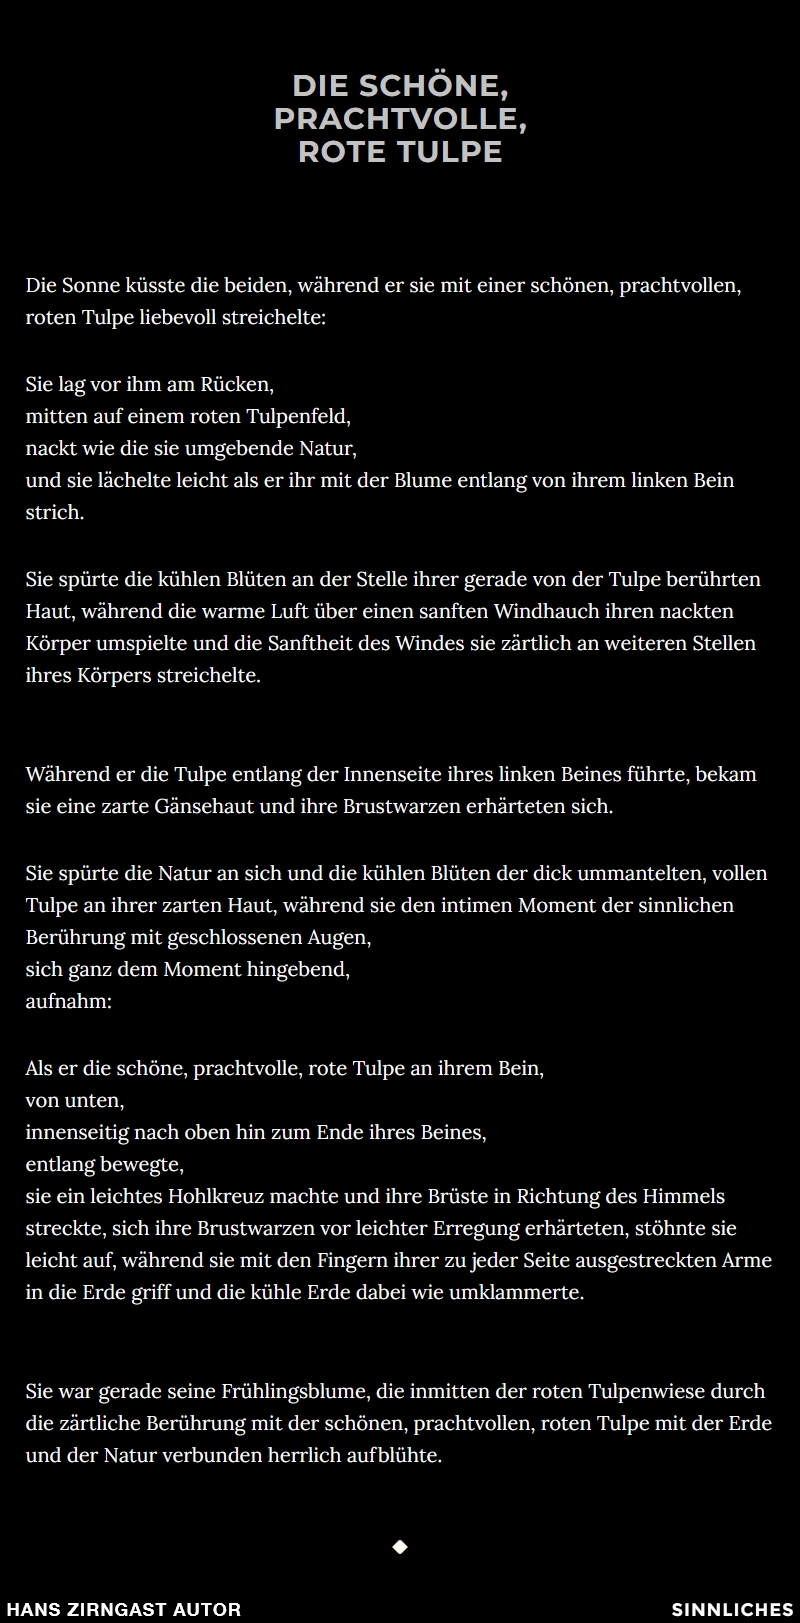 Hans Zirngast Autor - Sinnliches-Texte - Die schöne, prachtvolle, rote Tulpe